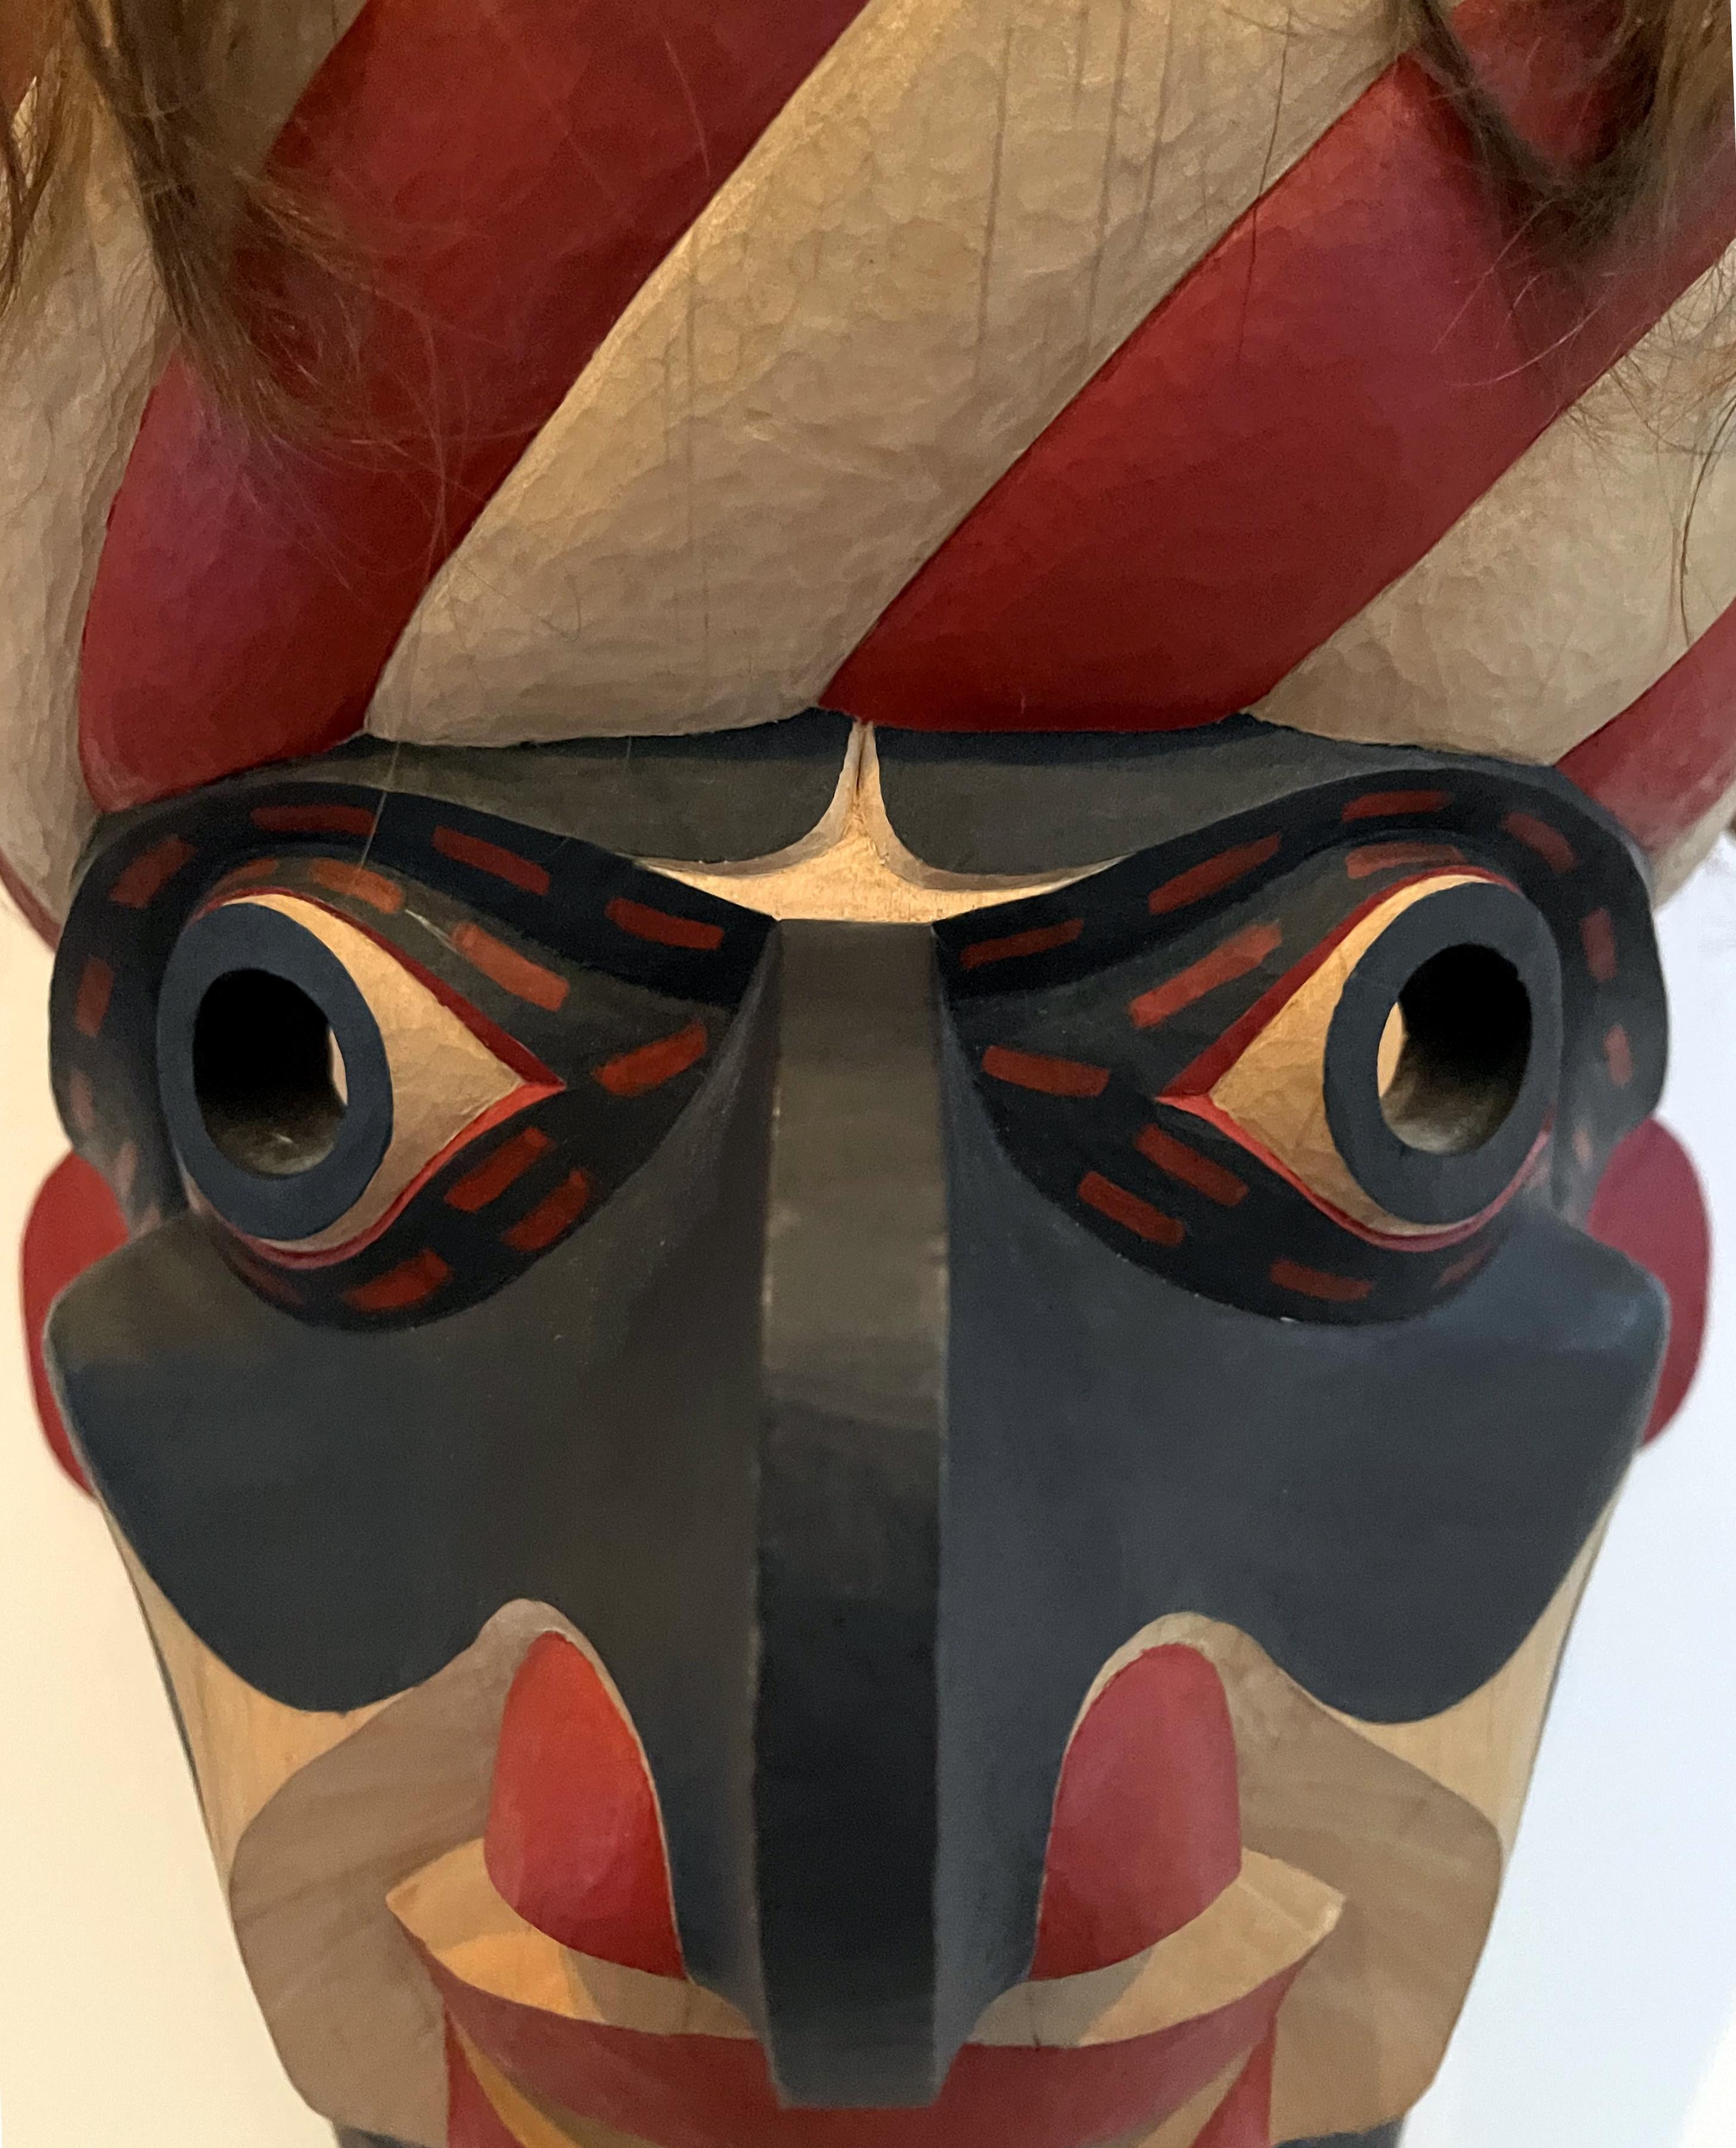 northwest indian masks